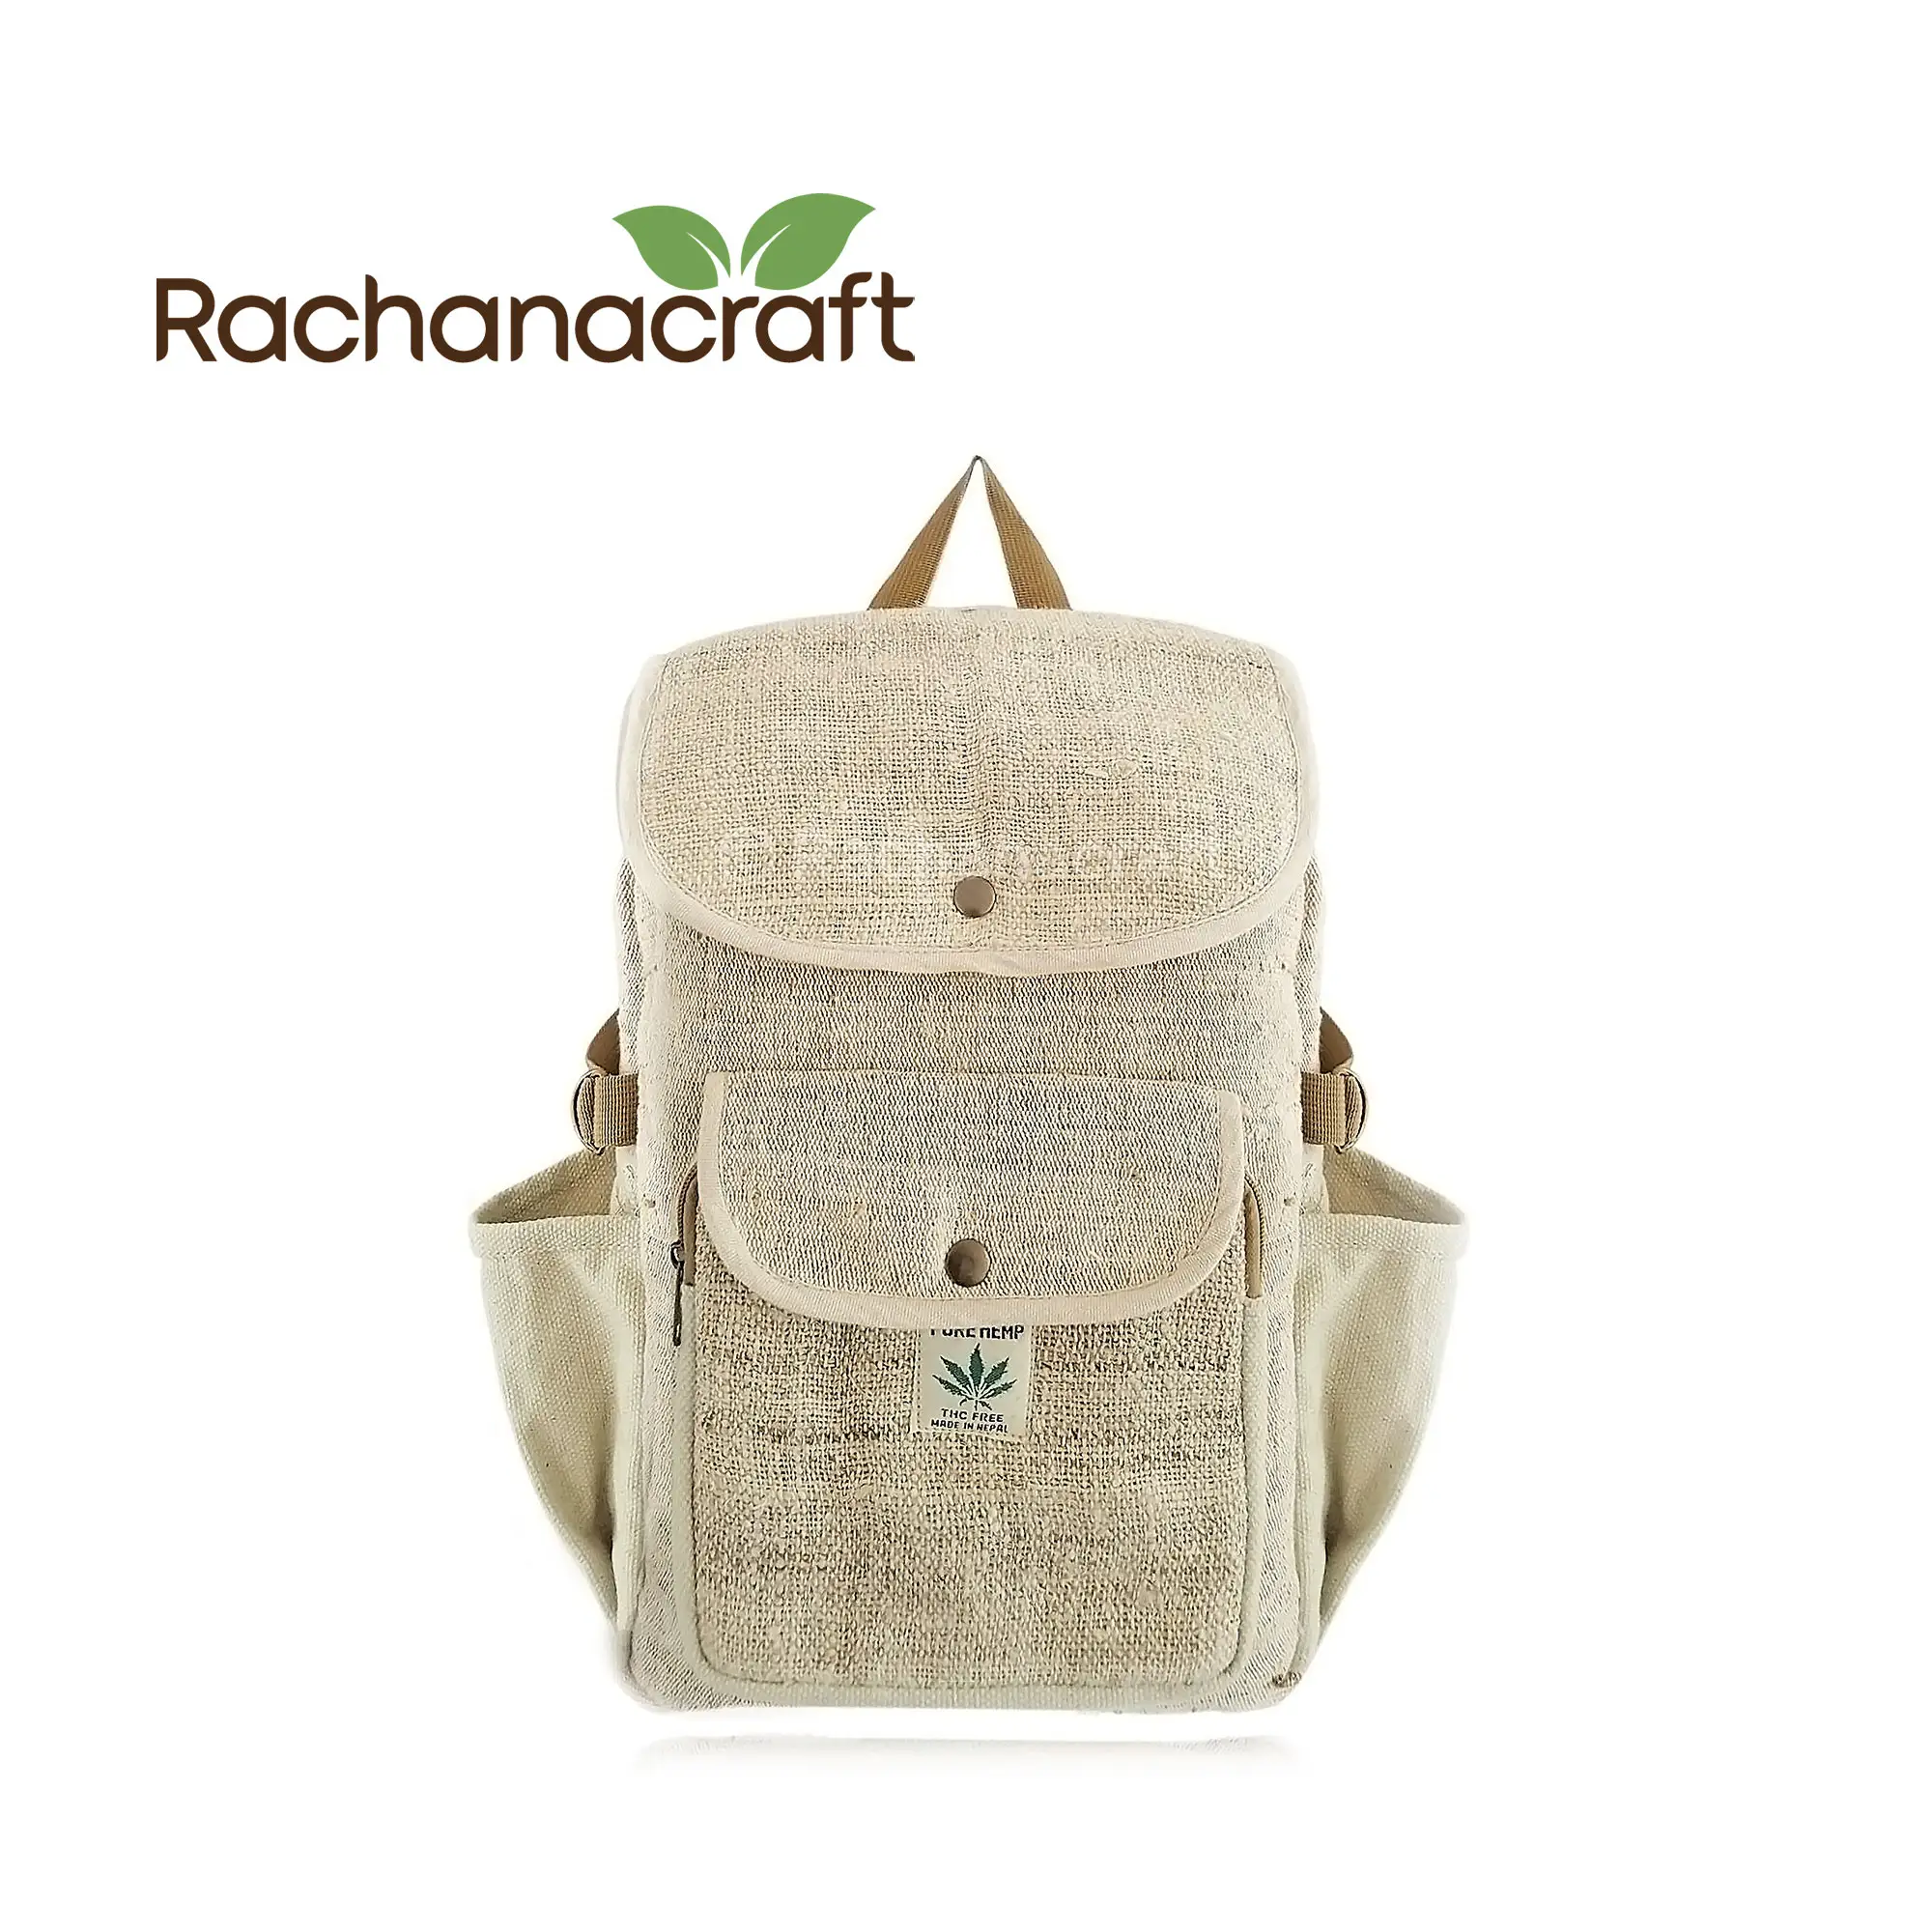 الهيمالايا اليدوية القنب الصديقة للبيئة نباتي العادية حجم حقيبة المدرسة التجارة العادلة اليدوية في نيبال إمدادات بالجملة